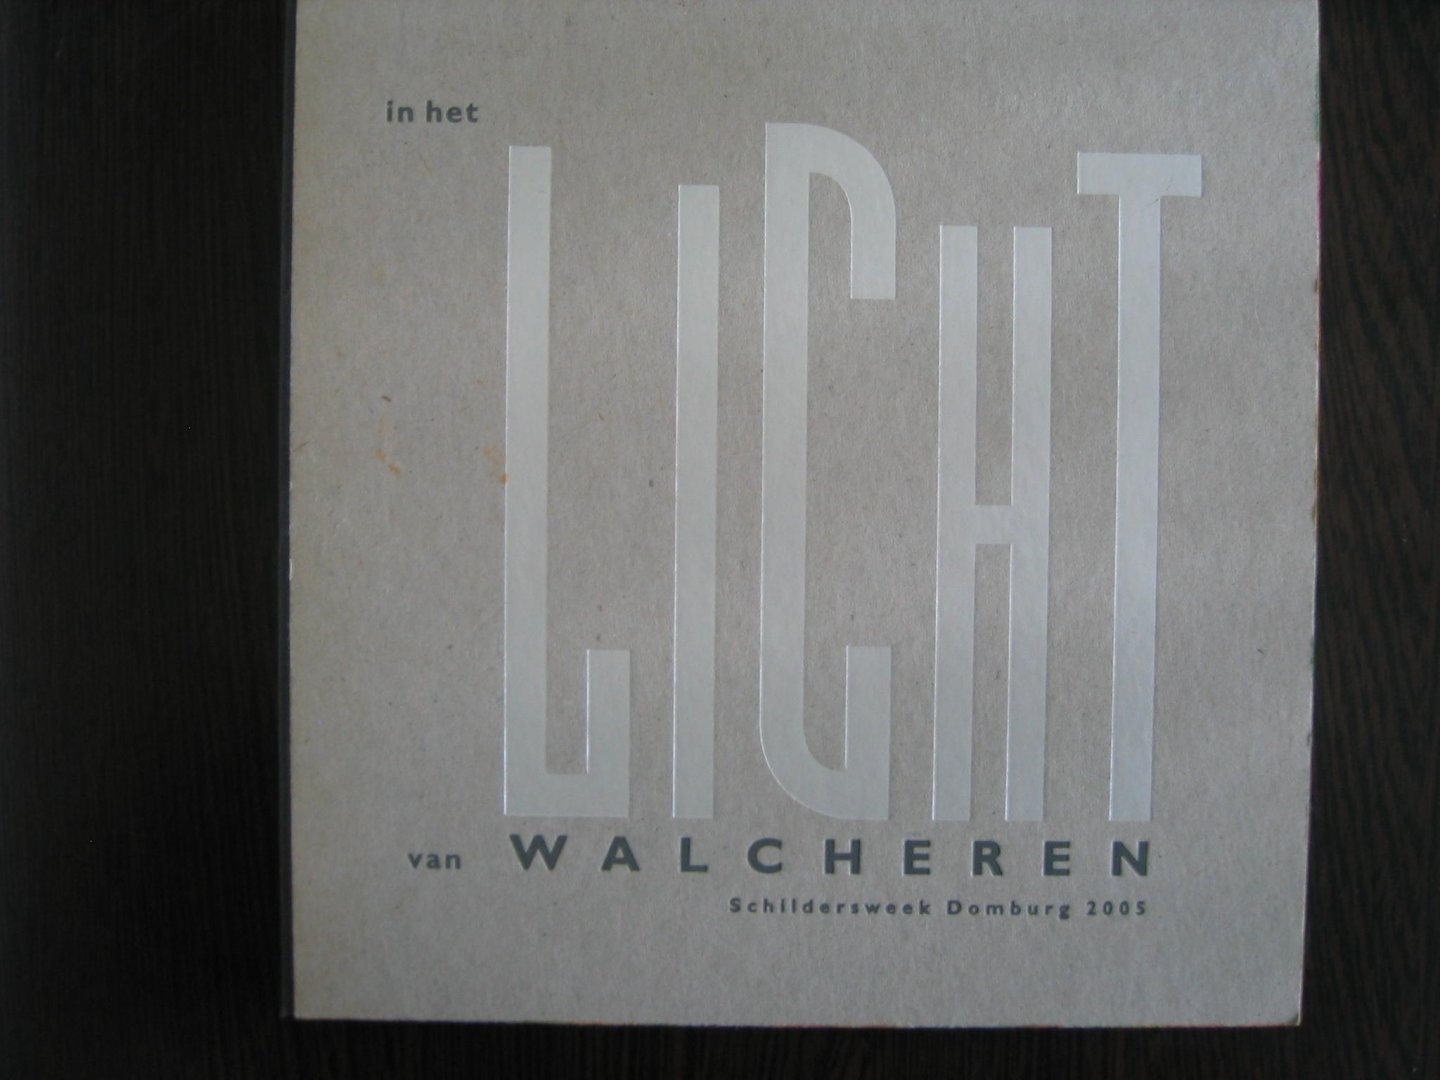 Harry J. Kraaij - In het licht van Walcheren - schildersweek Domburg 2005